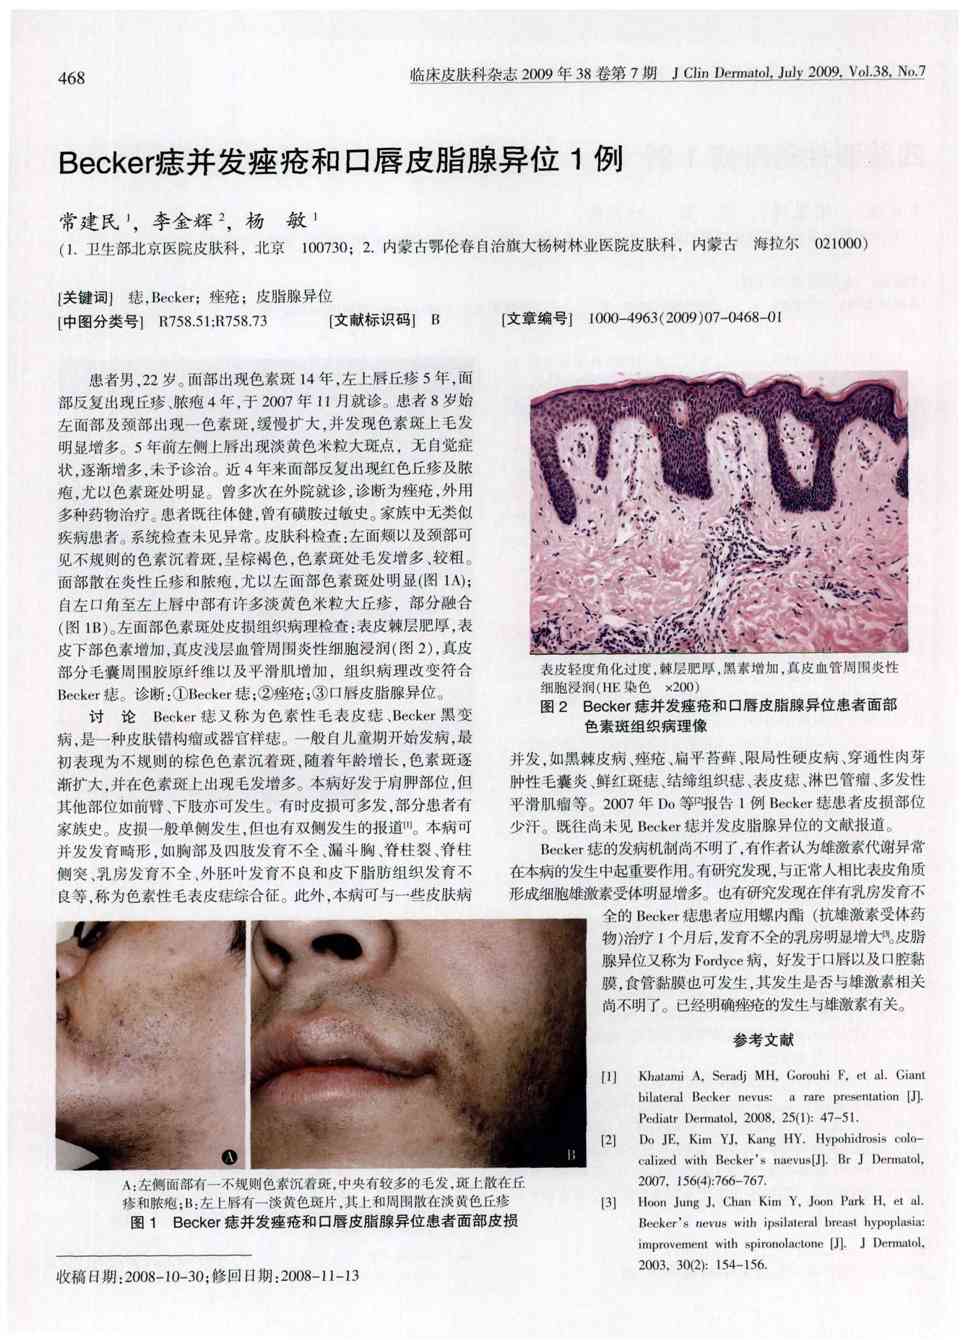 期刊becker痣并发痤疮和口唇皮脂腺异位1例     患者男,22岁.